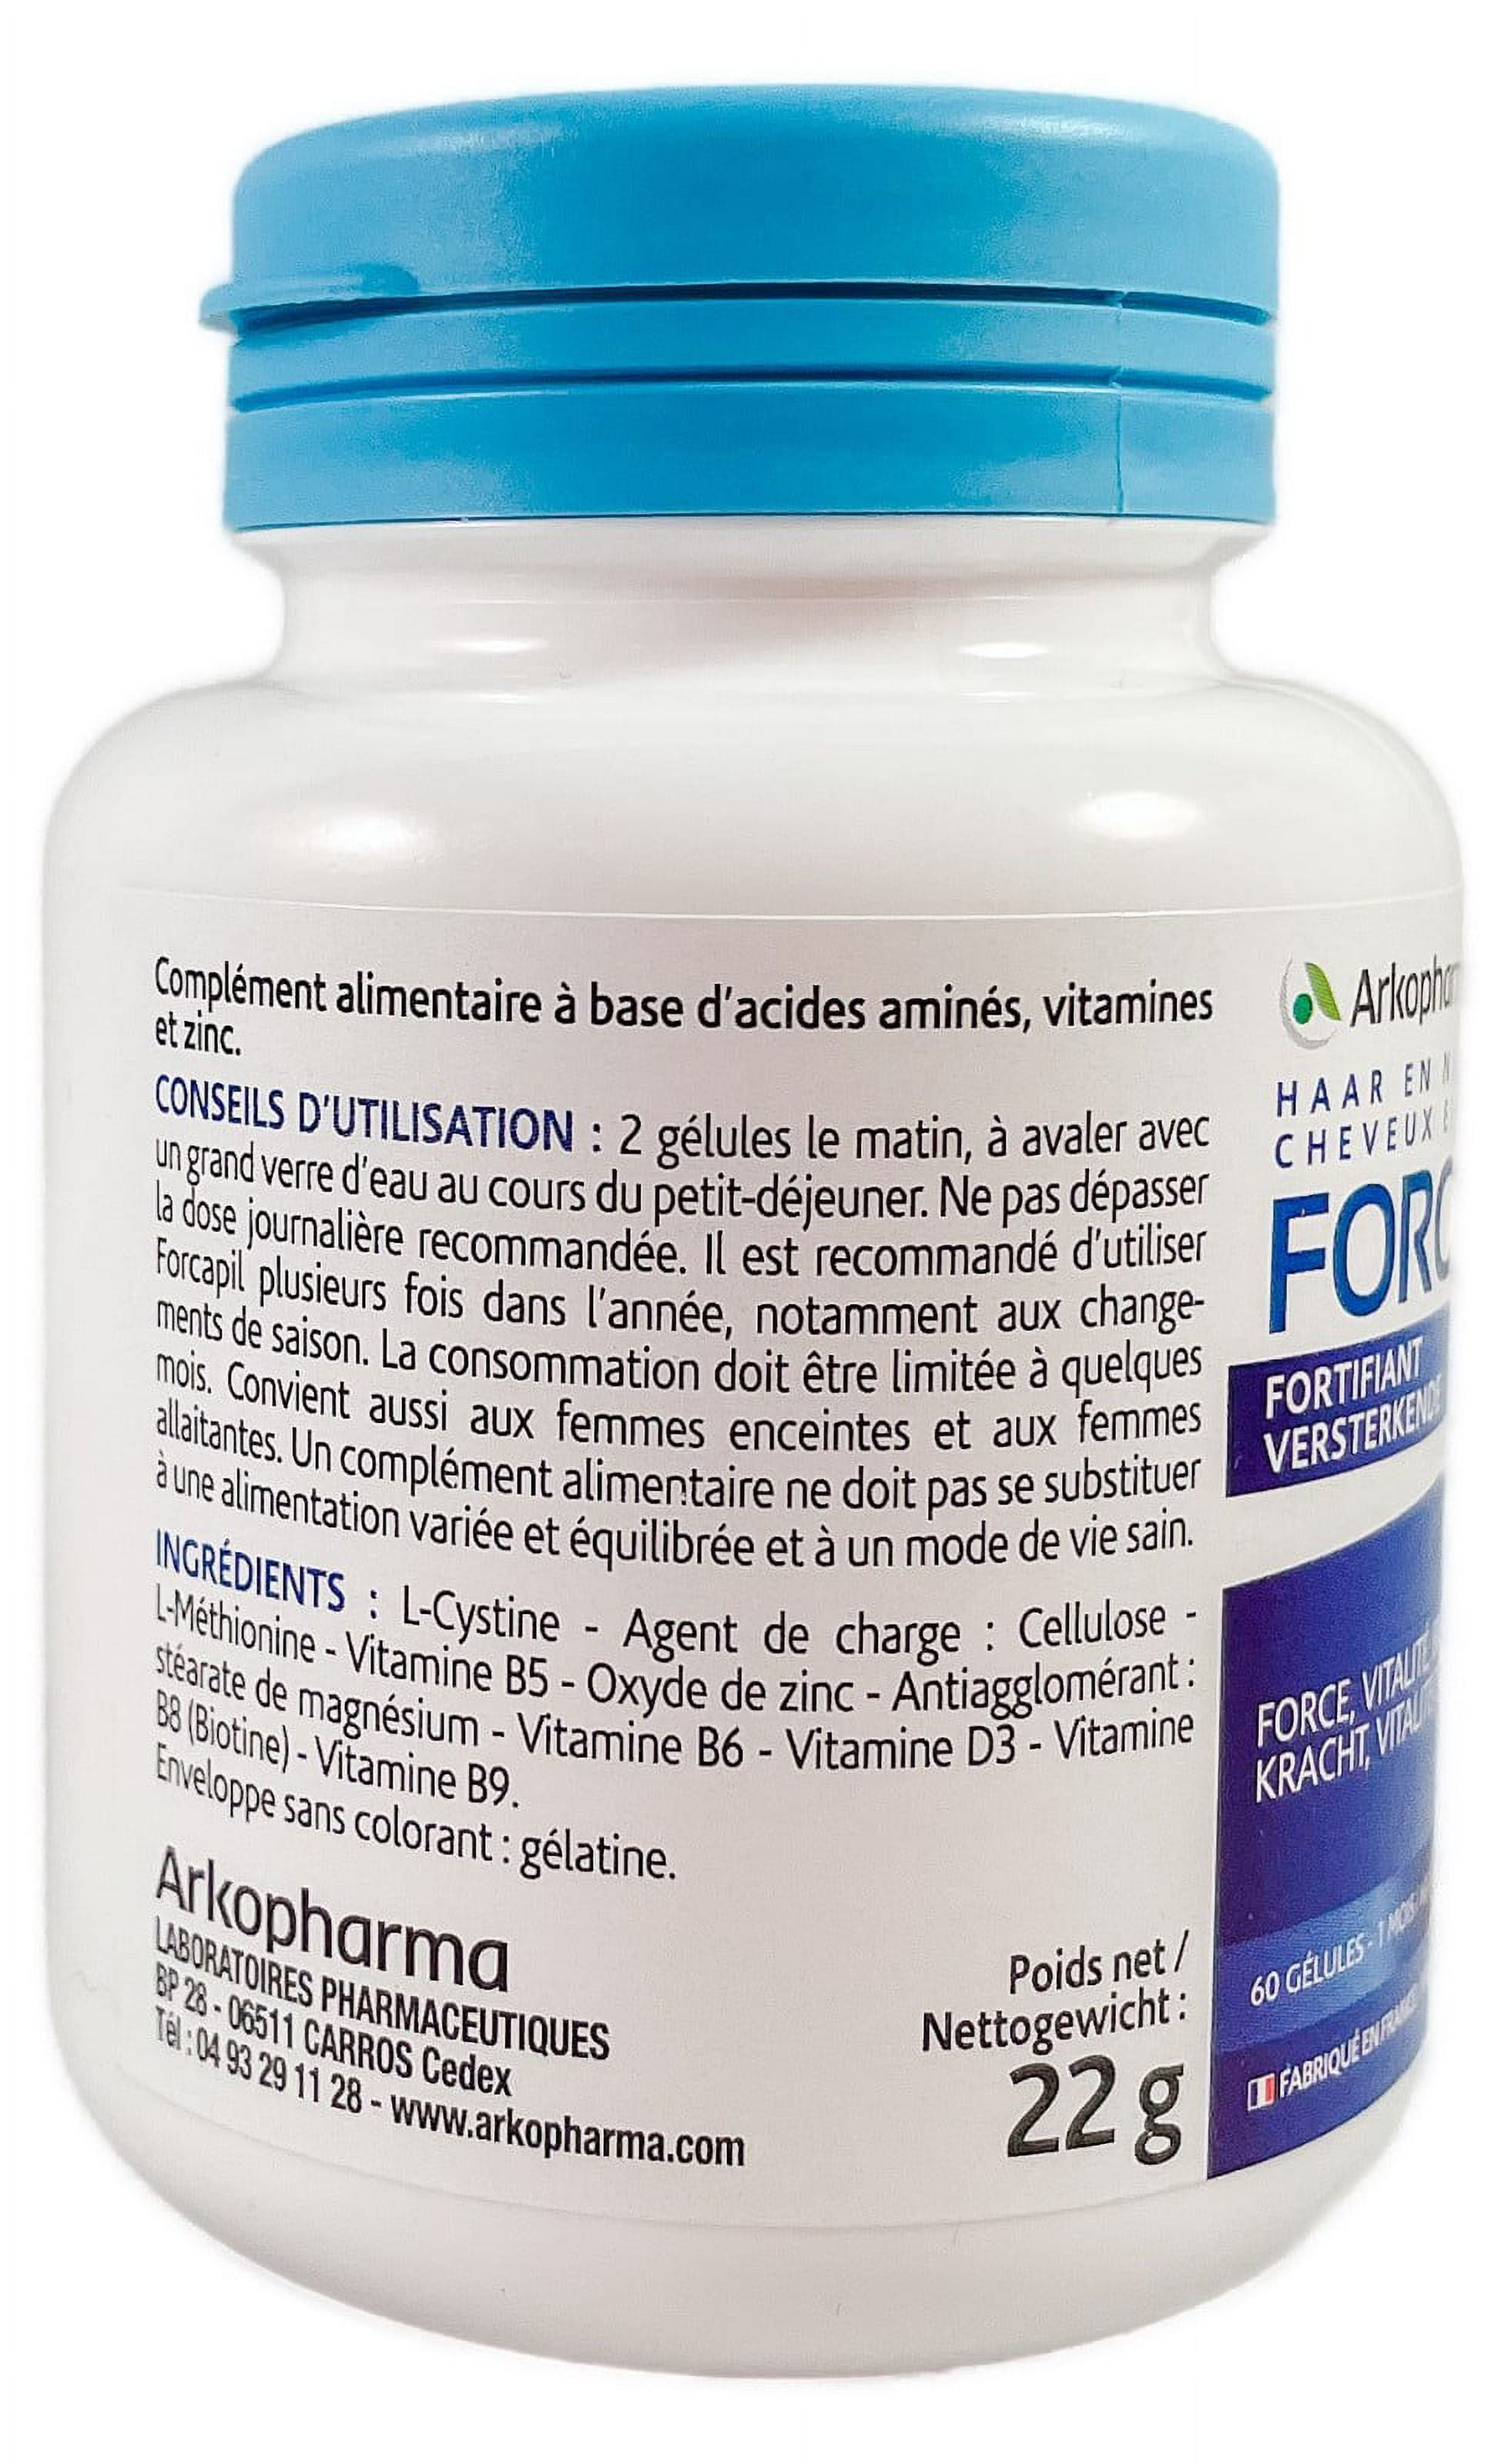 Arkopharma Arkoreal Vitadefensas Vitamins B and C Junior 20ampoules